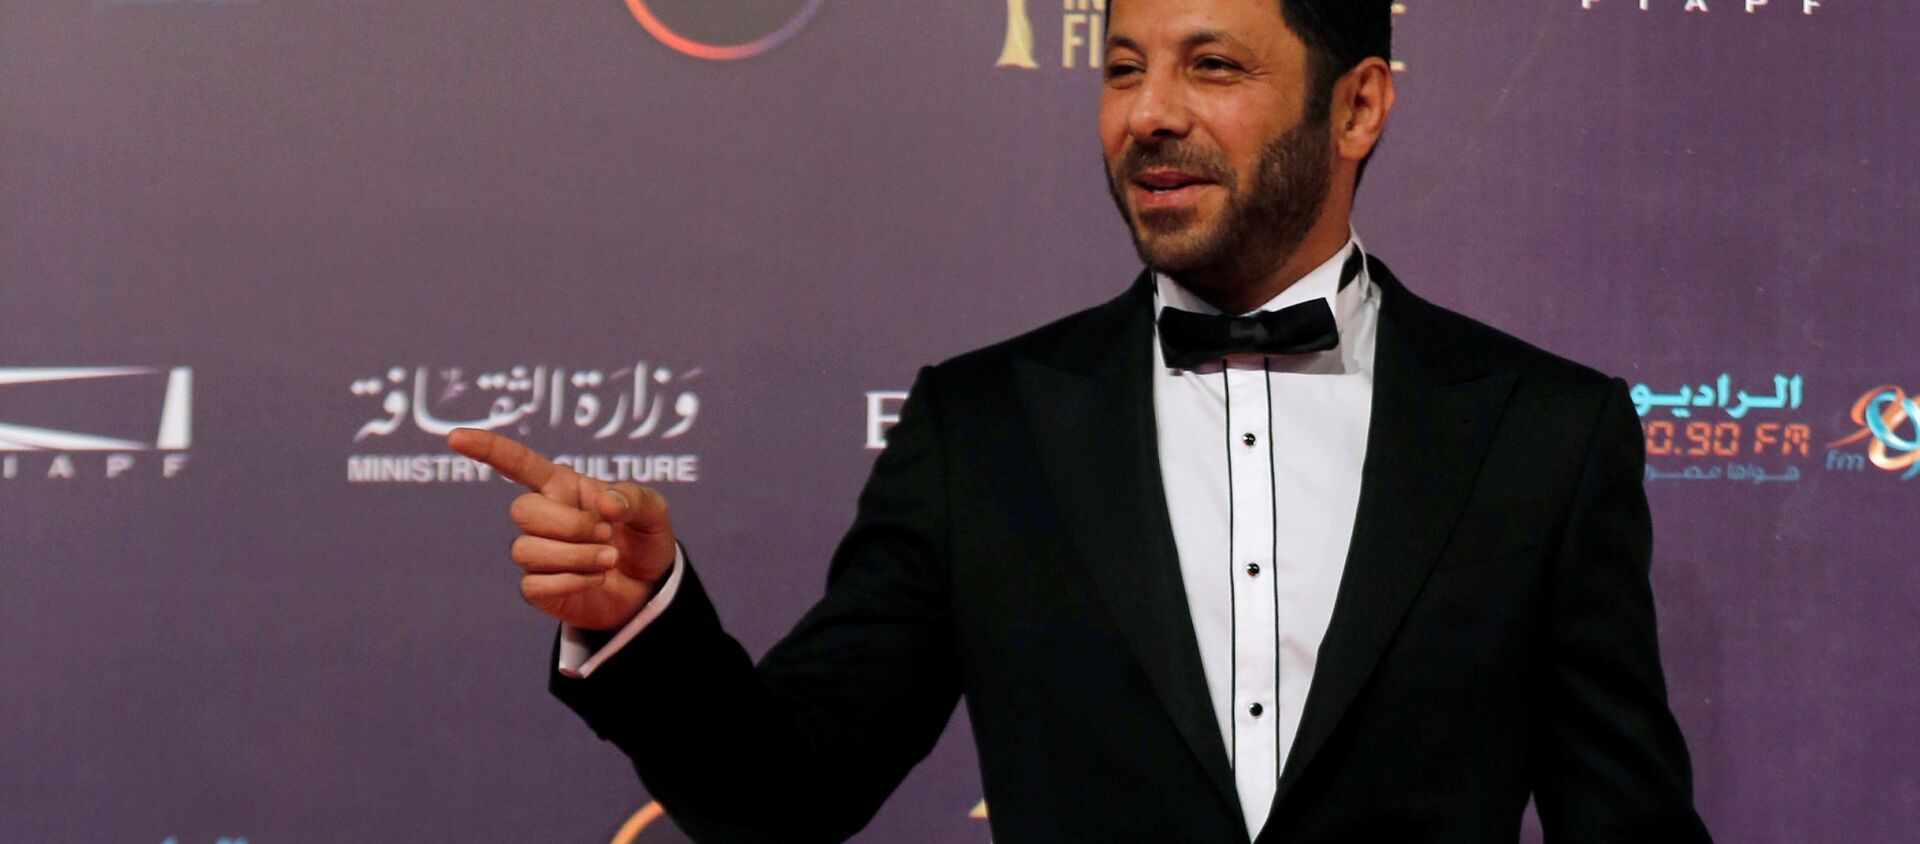  الممثل المصري إياد نصار خلال مهرجان القاهرة السينمائي الـ 39، مصر 21 نوفمبر/ كانون الأول 2017 - سبوتنيك عربي, 1920, 05.01.2021